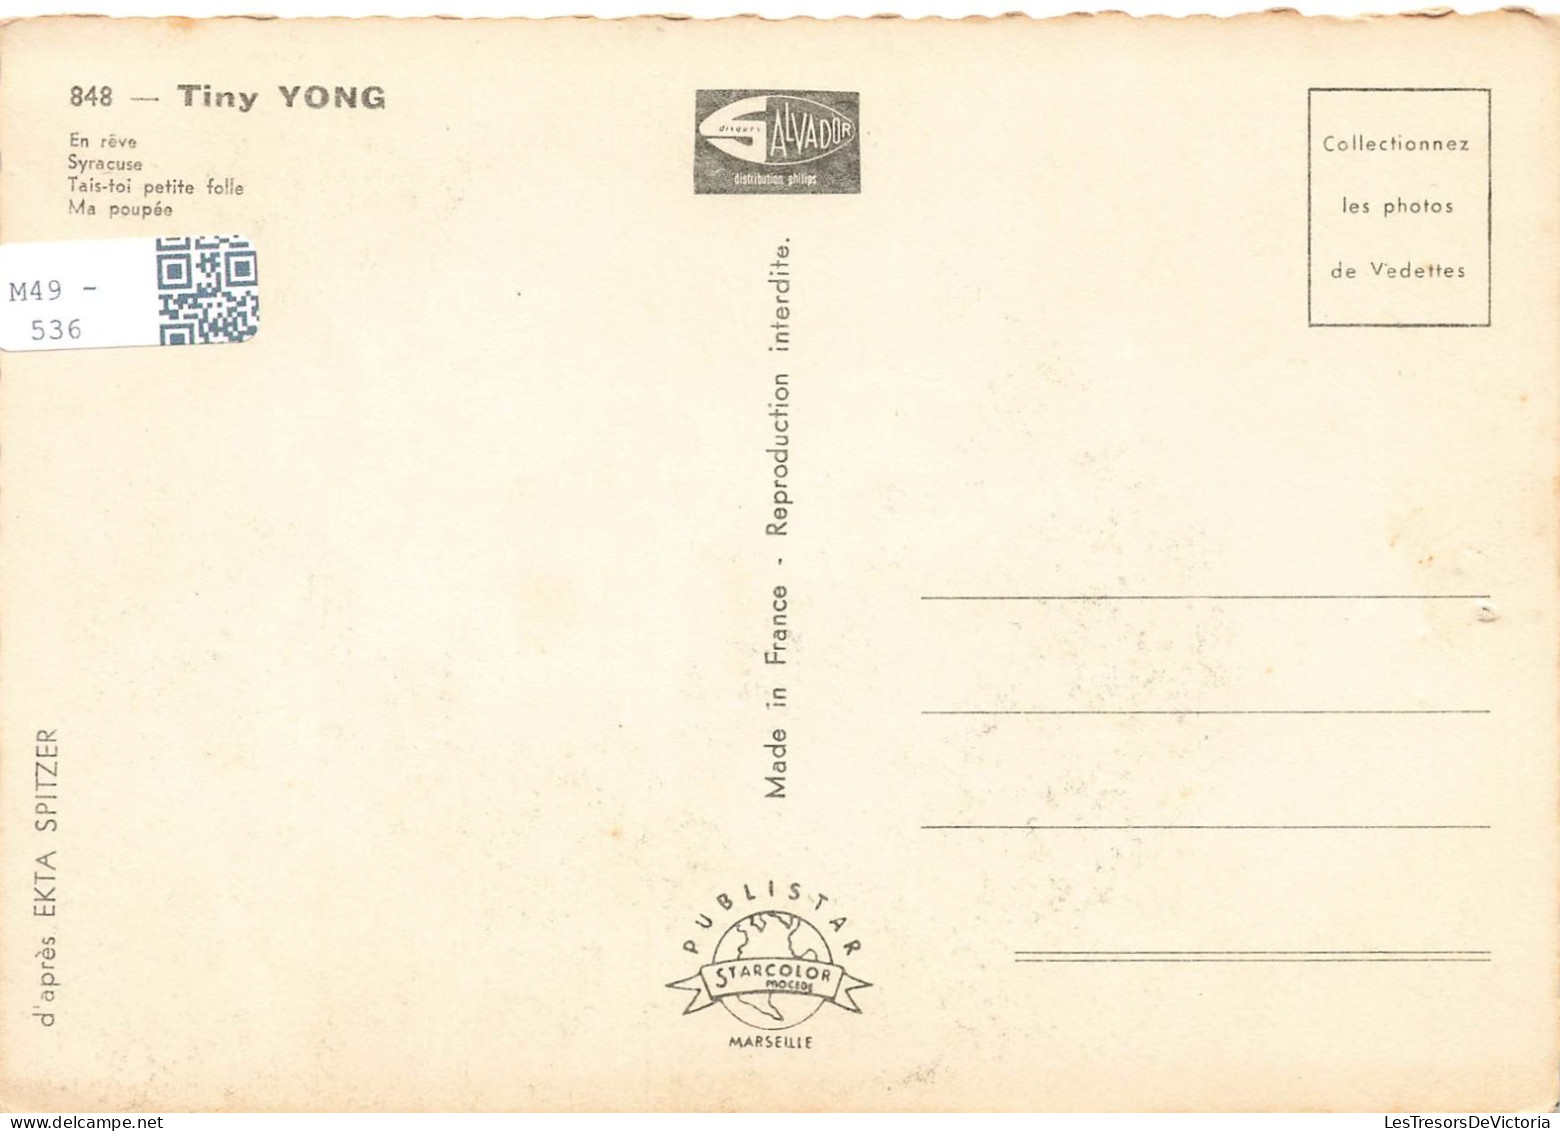 CELEBRITES - Tiny Yong - Colorisé - Carte Postale - Famous Ladies